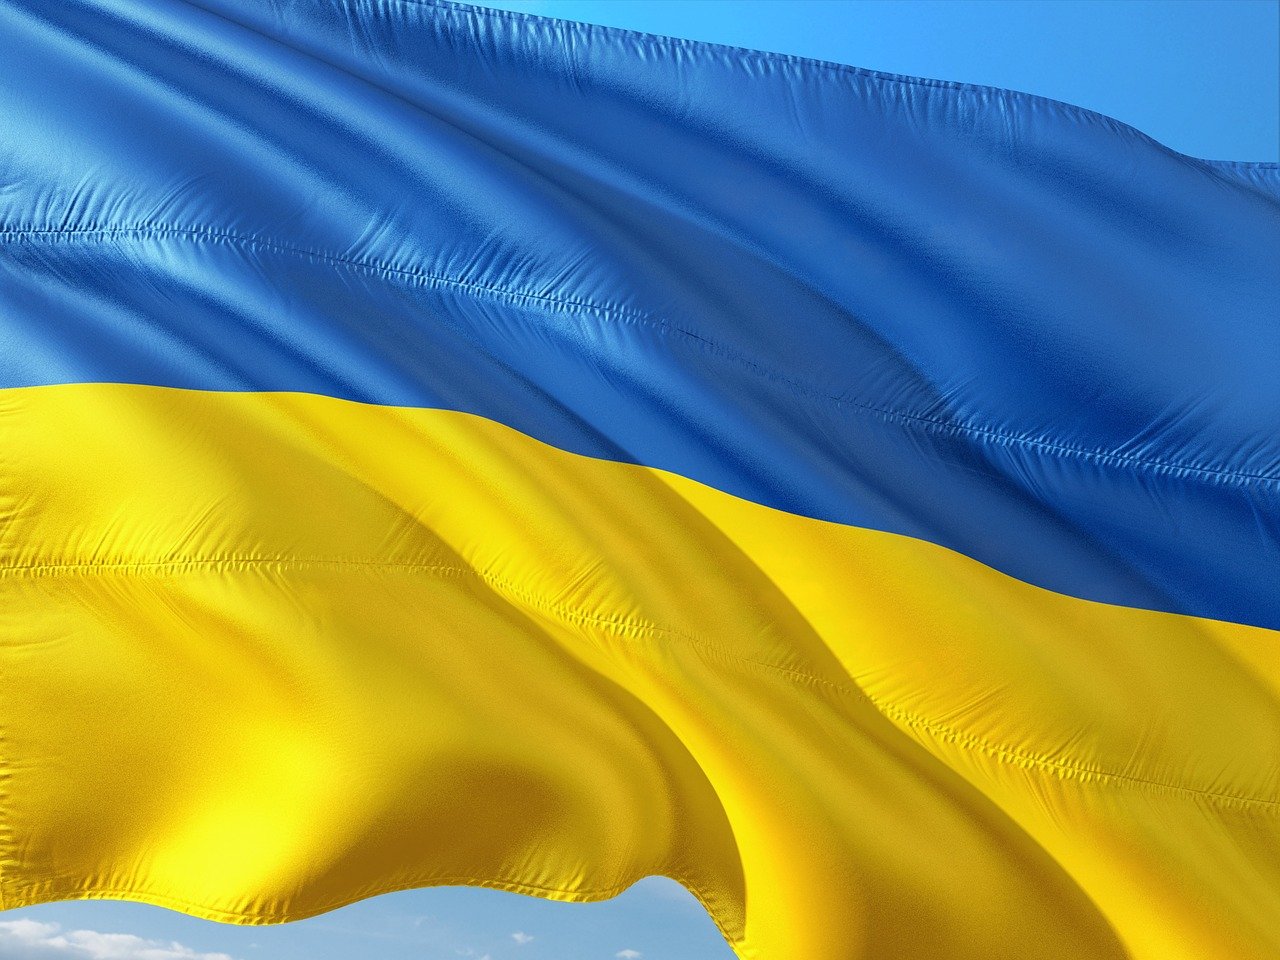 Kontakt dla studentów z Ukrainy